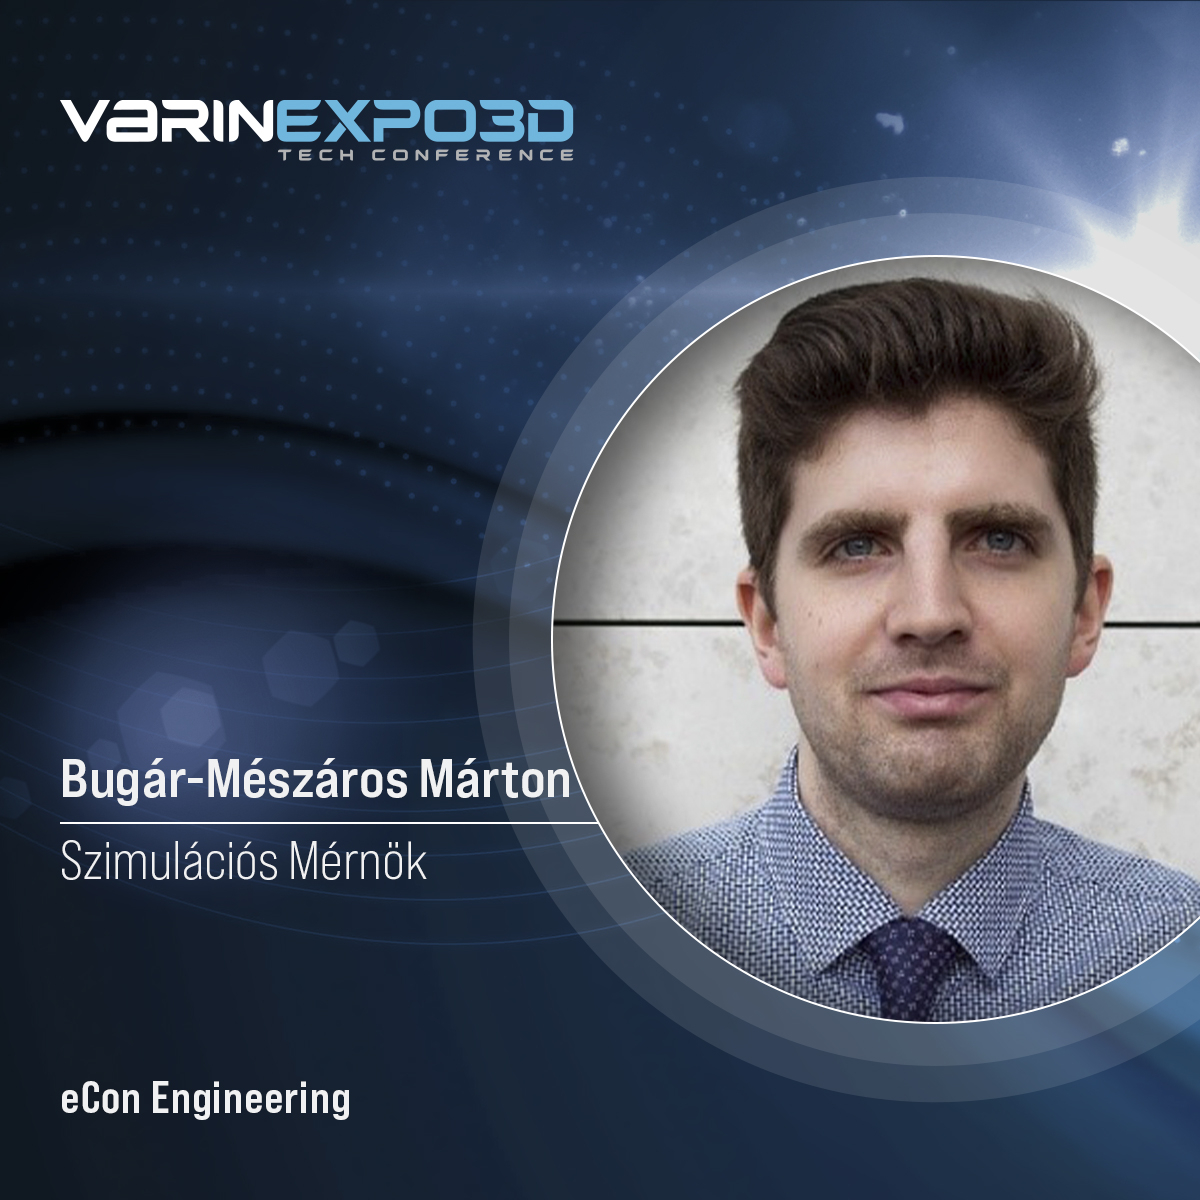 Bugár-Mészáros Márton, eCon Engineering